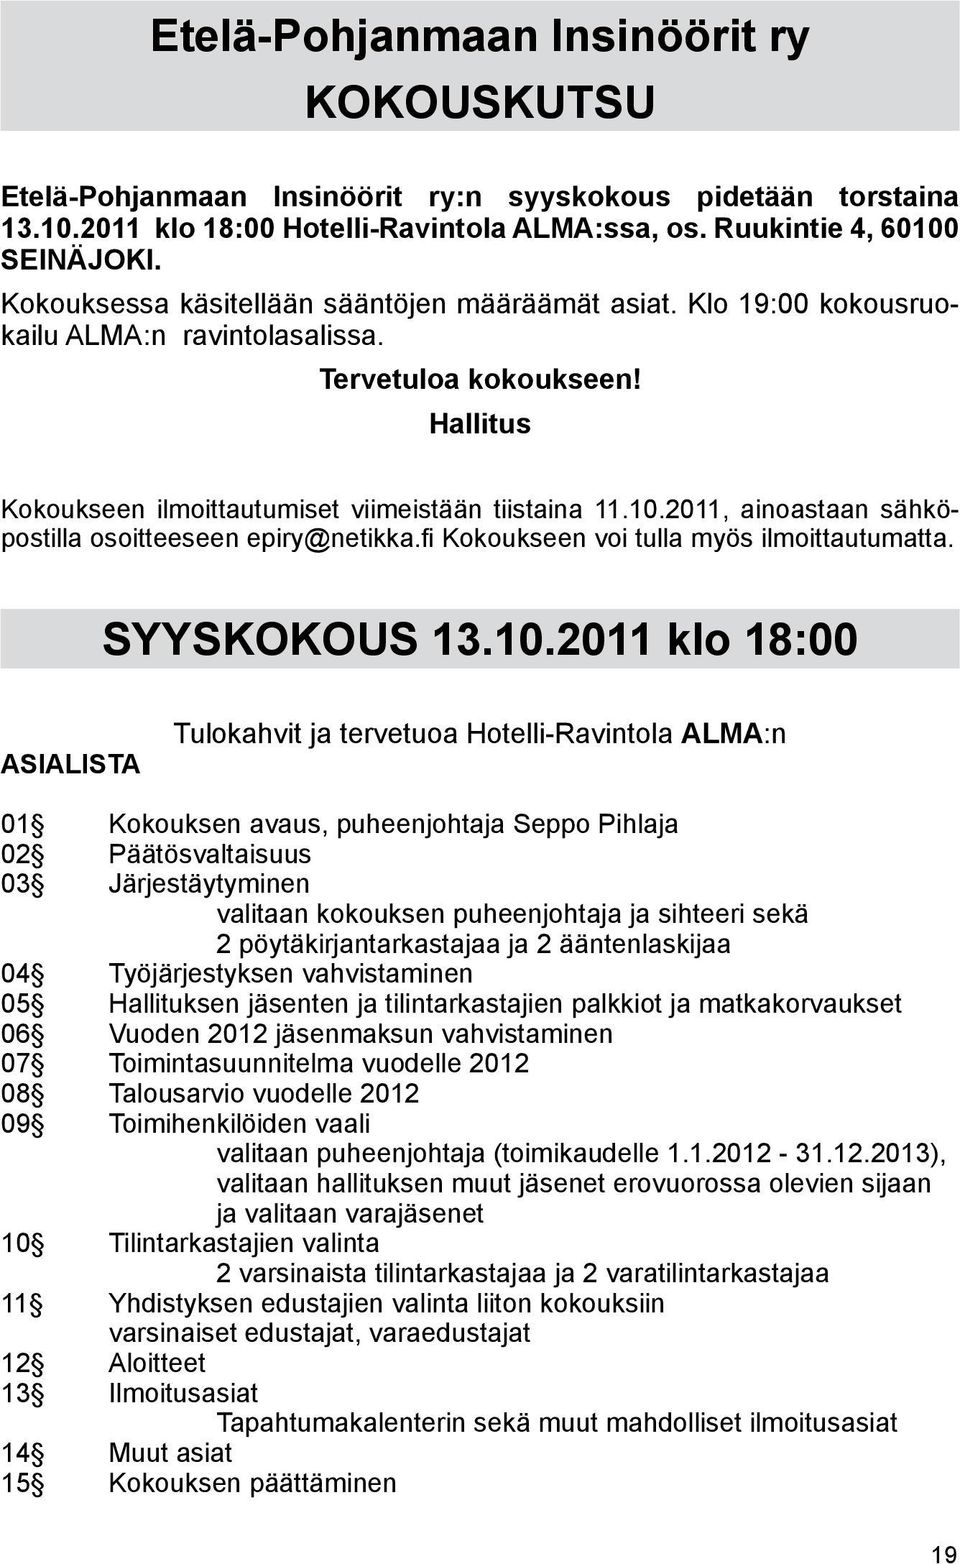 2011, ainoastaan sähköpostilla osoitteeseen epiry@netikka.fi Kokoukseen voi tulla myös ilmoittautumatta. SYYSKOKOUS 13.10.